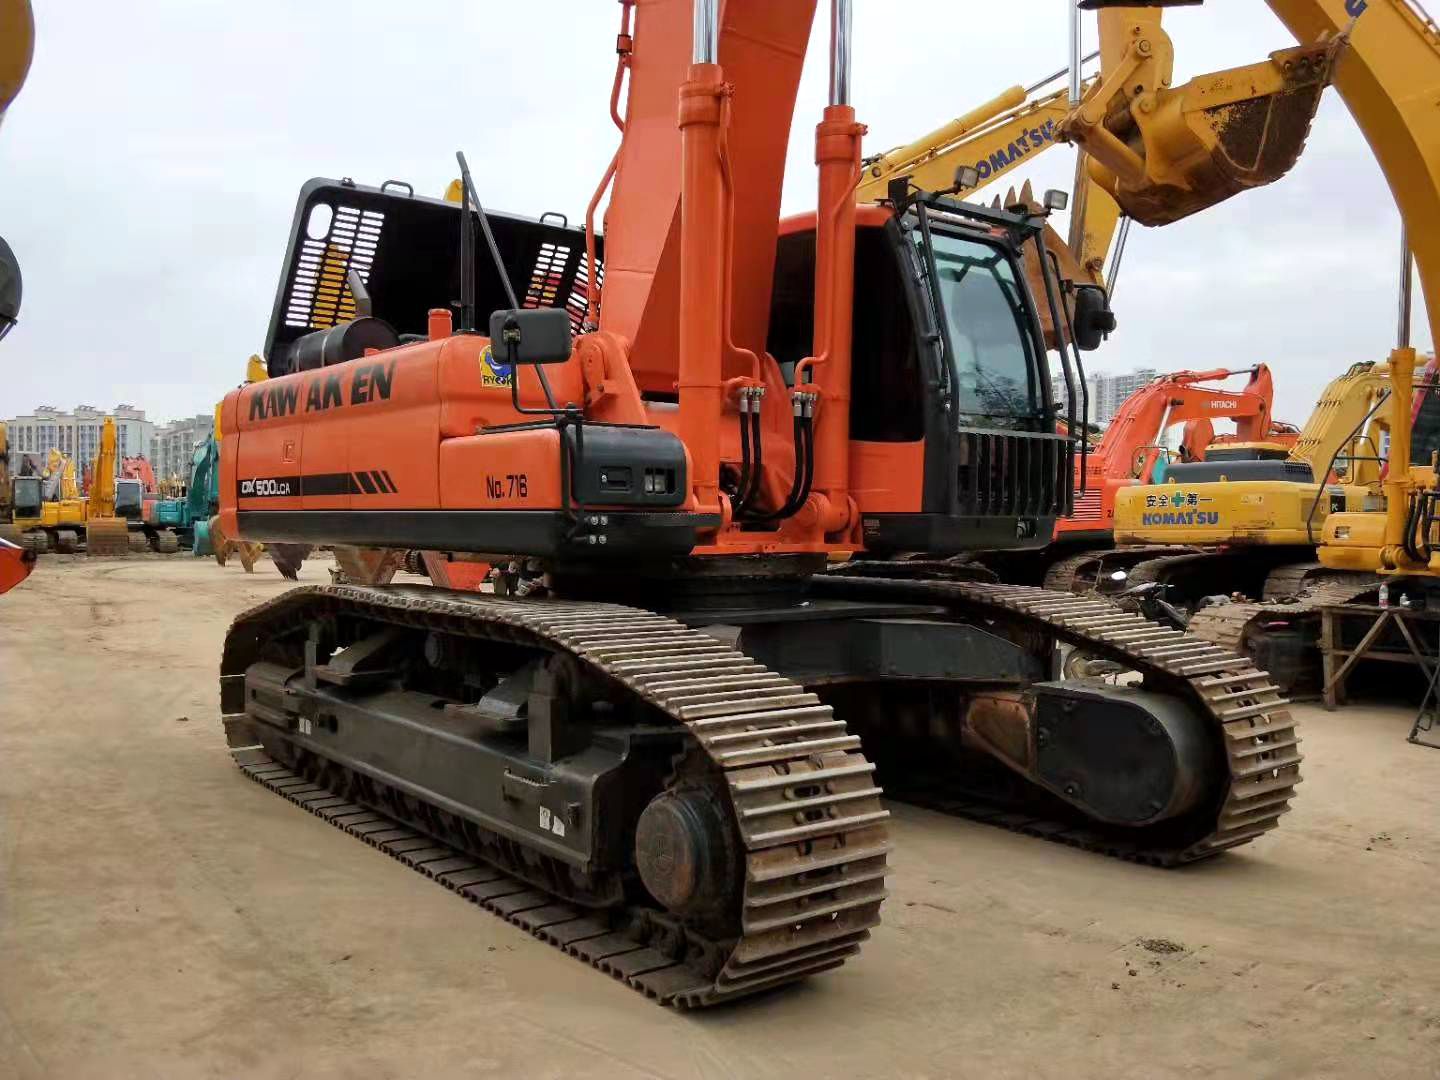 DOOSAN DX500 excavator